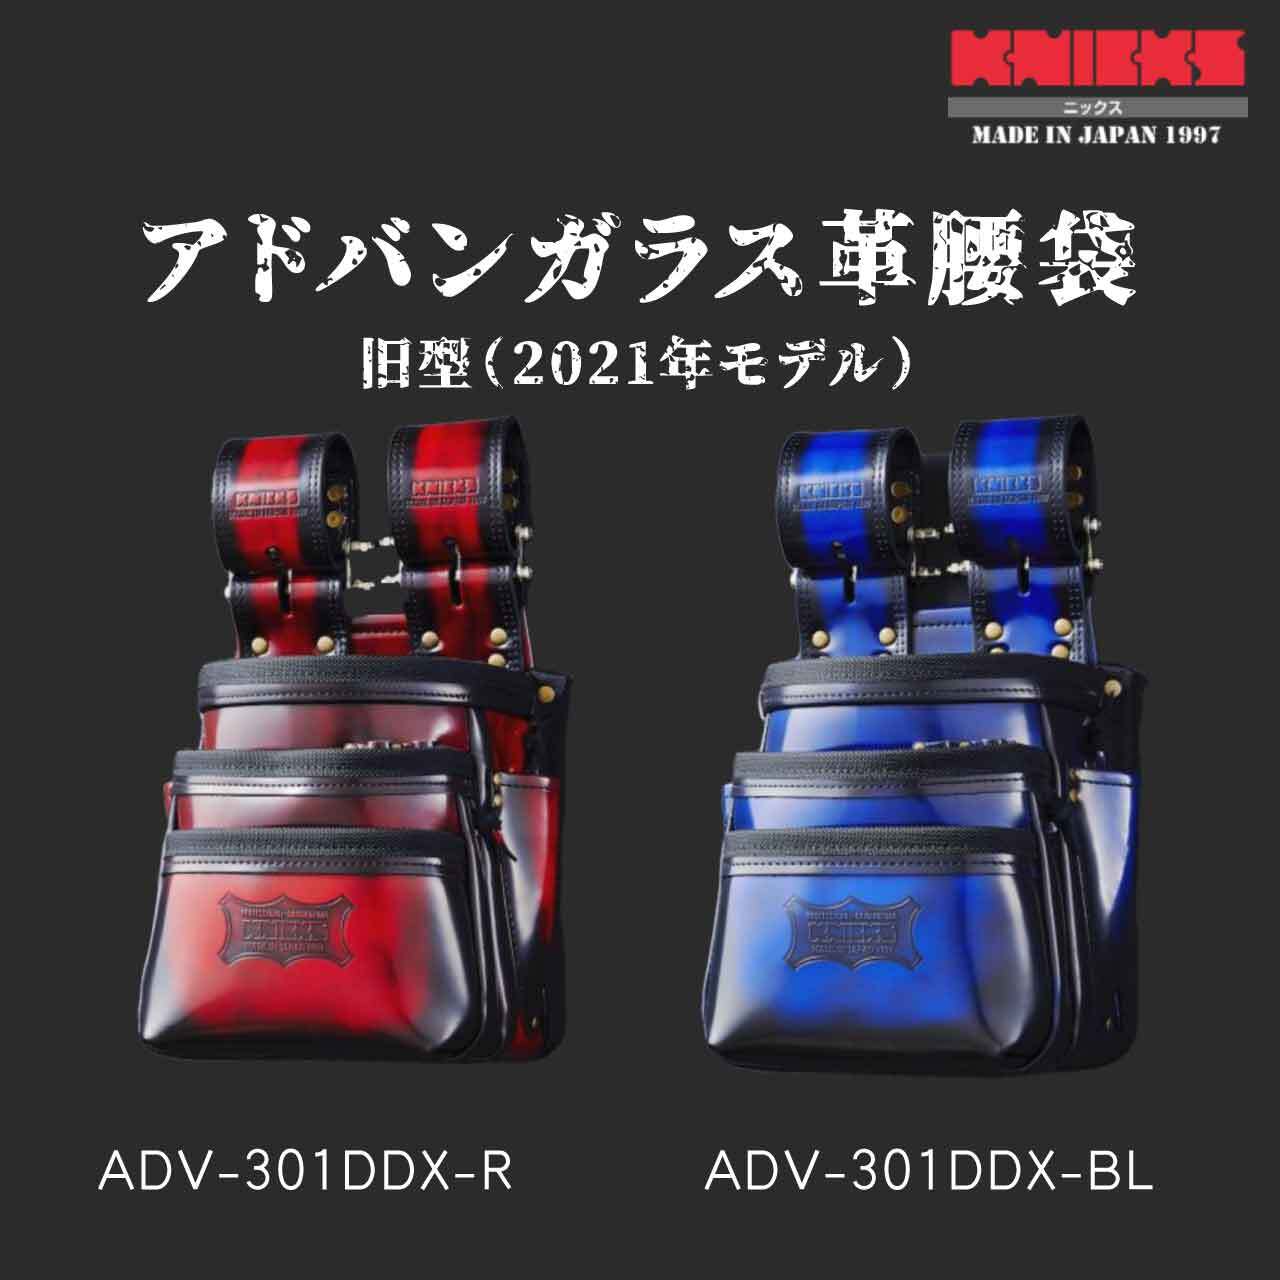 ニックス アドバンガラス革VA腰袋(赤) ADV-201TG-R - 2